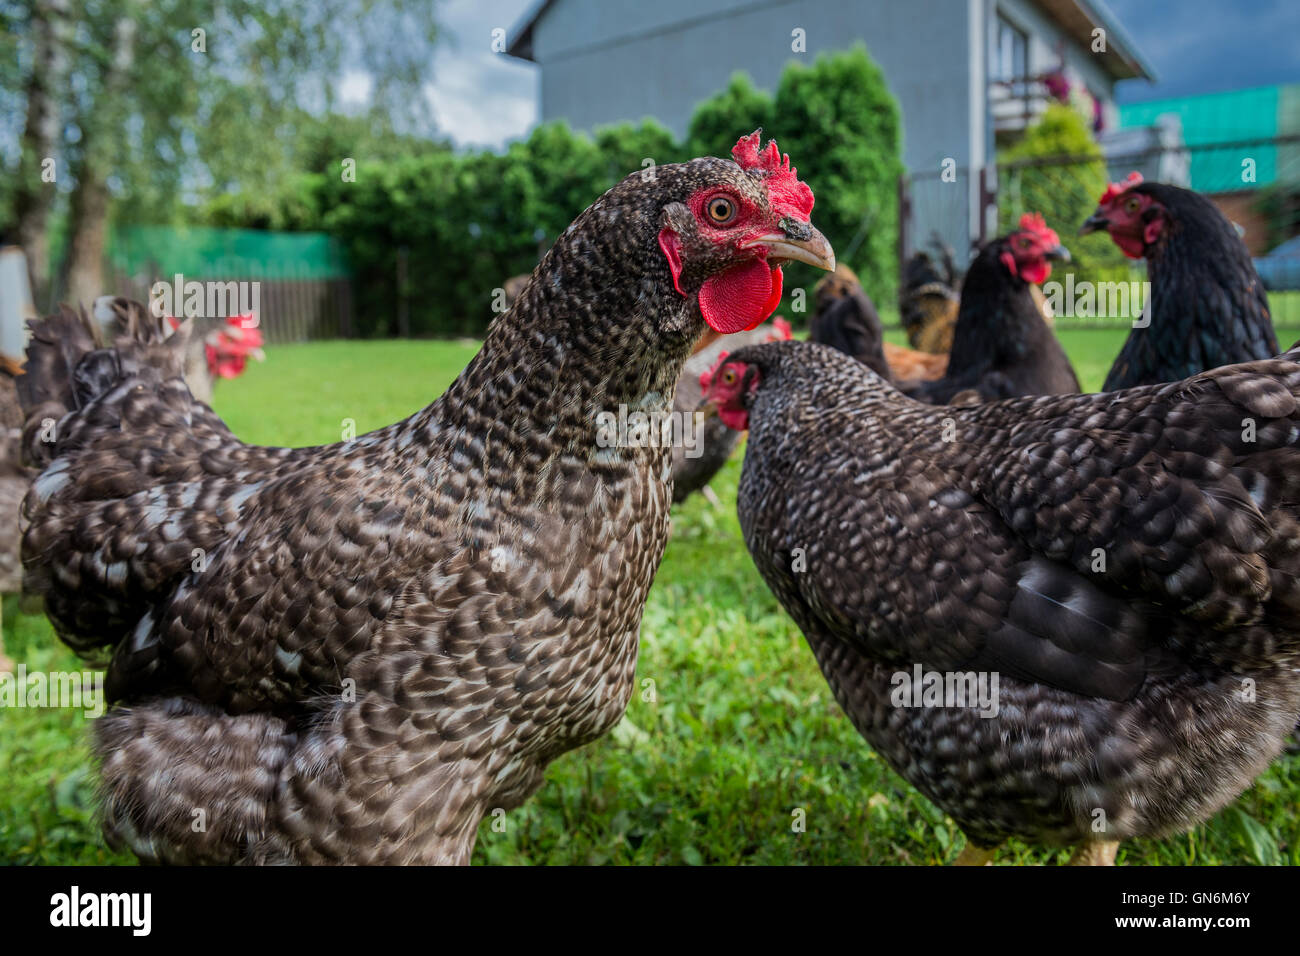 Free Range chicken farm dans un village de Pologne Banque D'Images